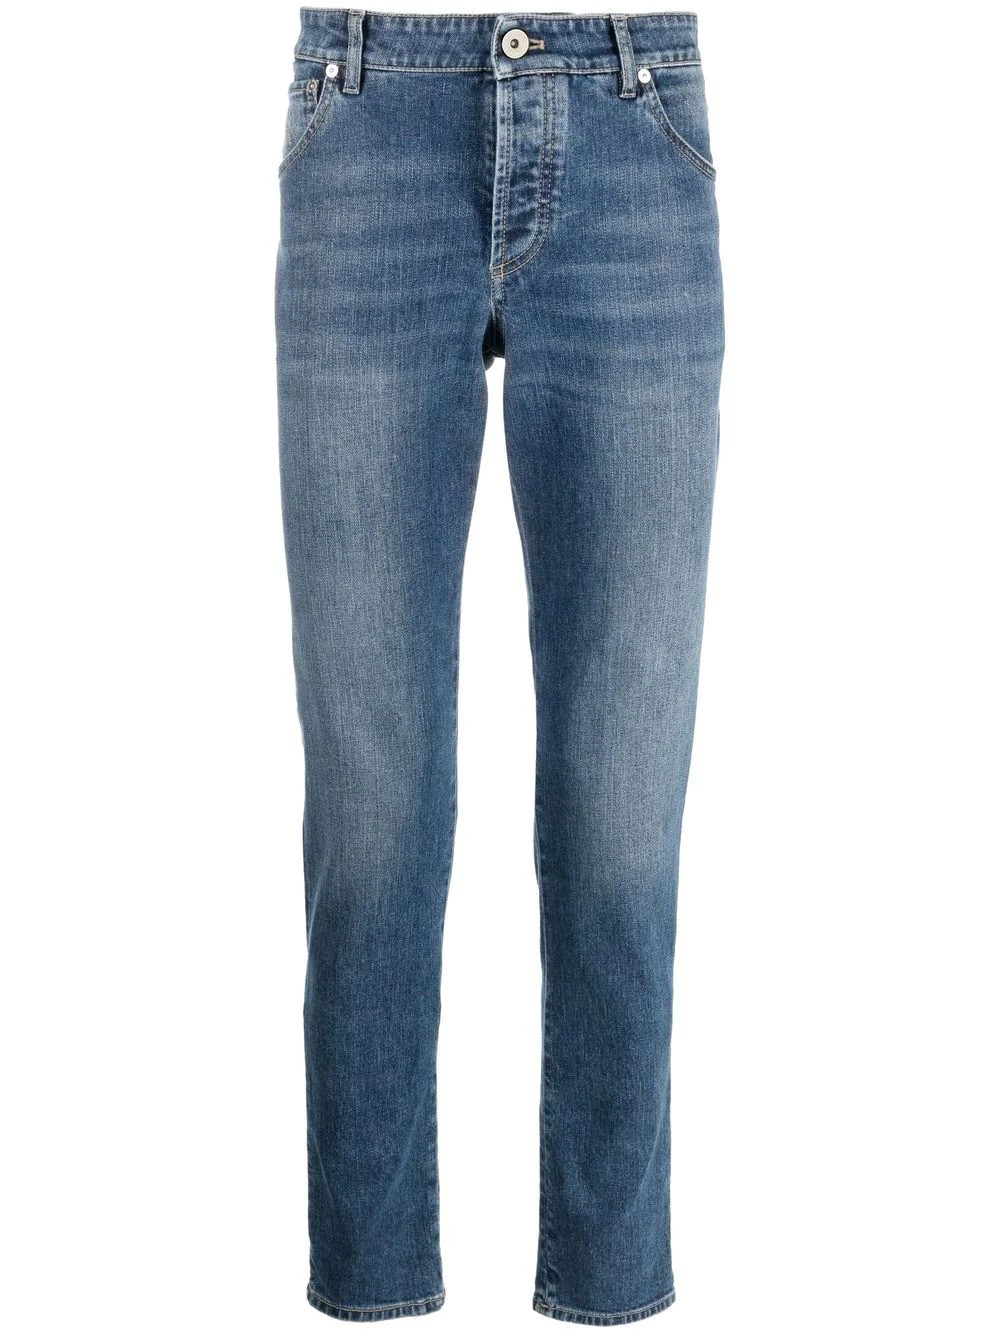 Pantalone cinque tasche slim fit in denim comfort – Denim medio